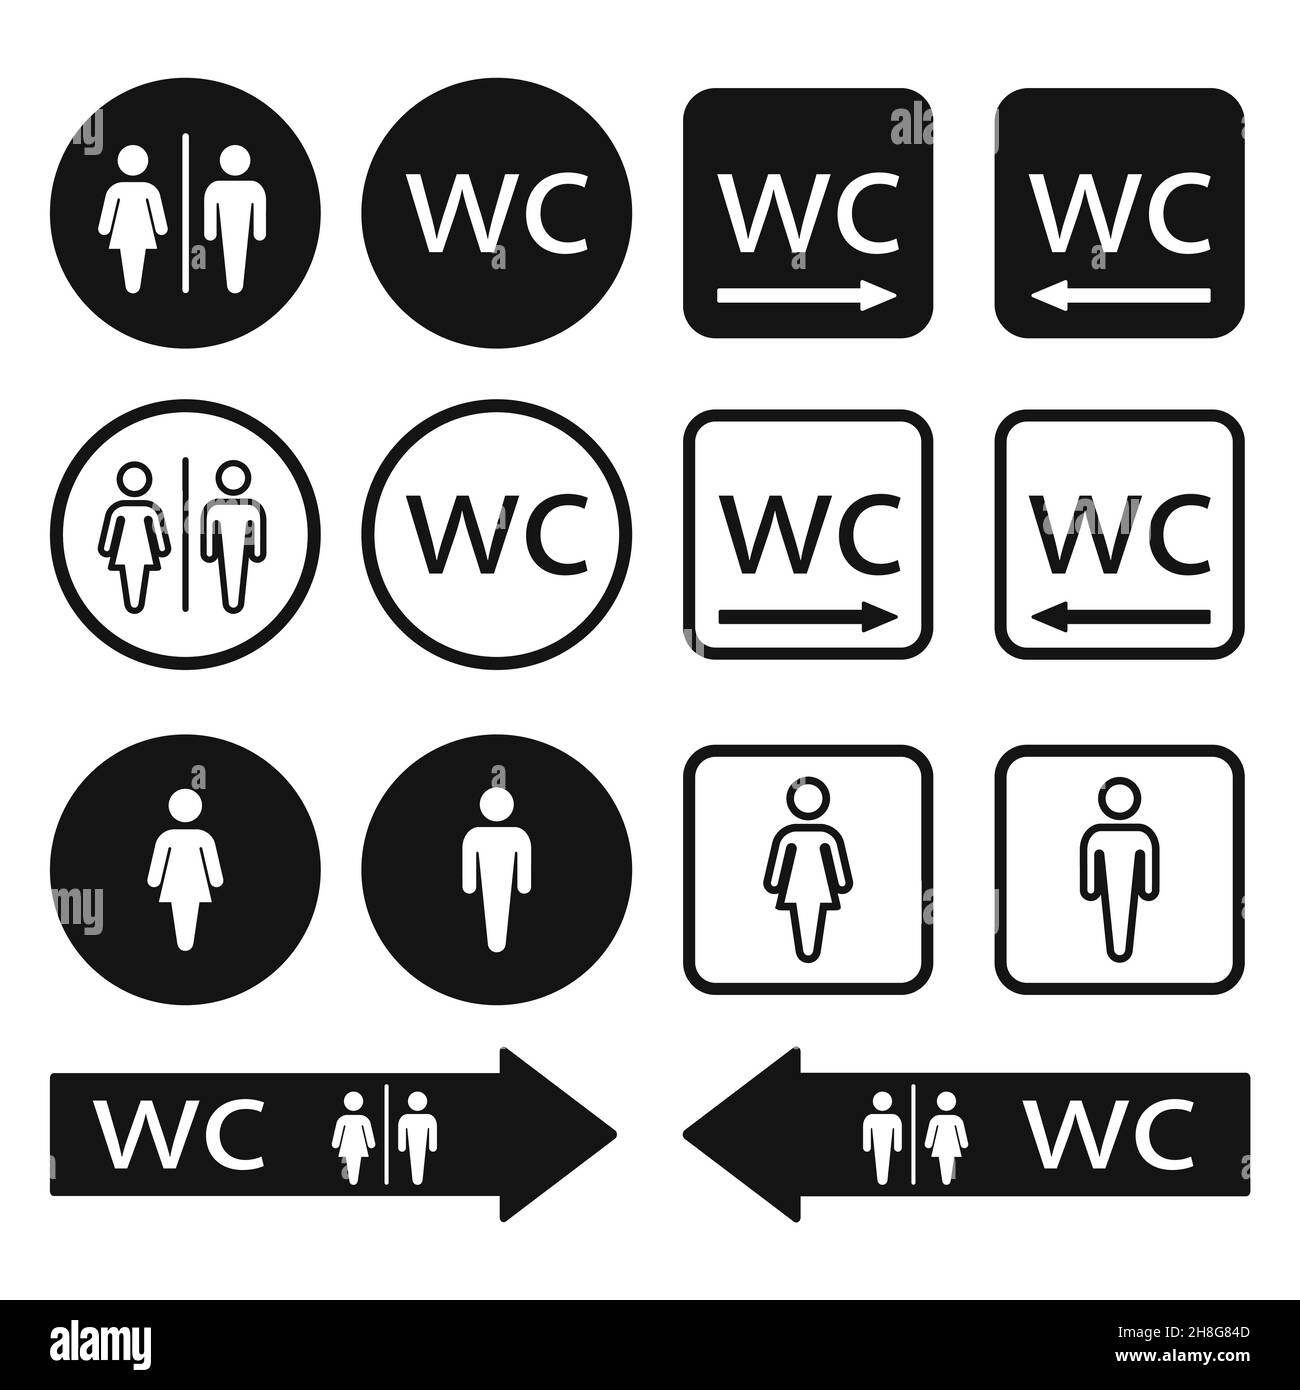 Icônes WC WC définies.Affiches de toilettes pour hommes et femmes.Illustration vectorielle du symbole de flèche de direction WC. Illustration de Vecteur